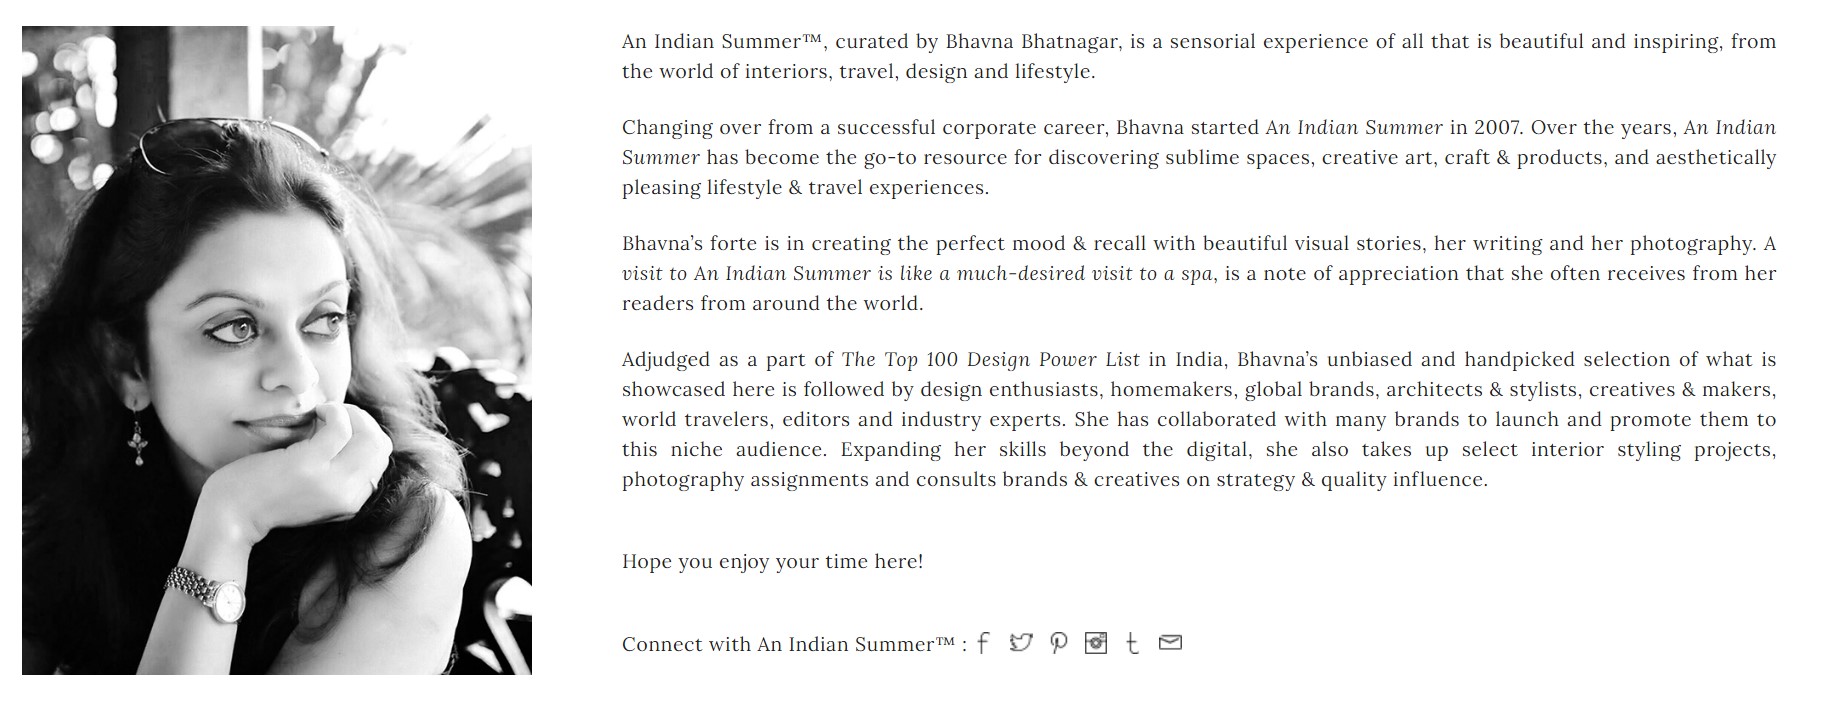 Bhavna Bhatnagar’s blog